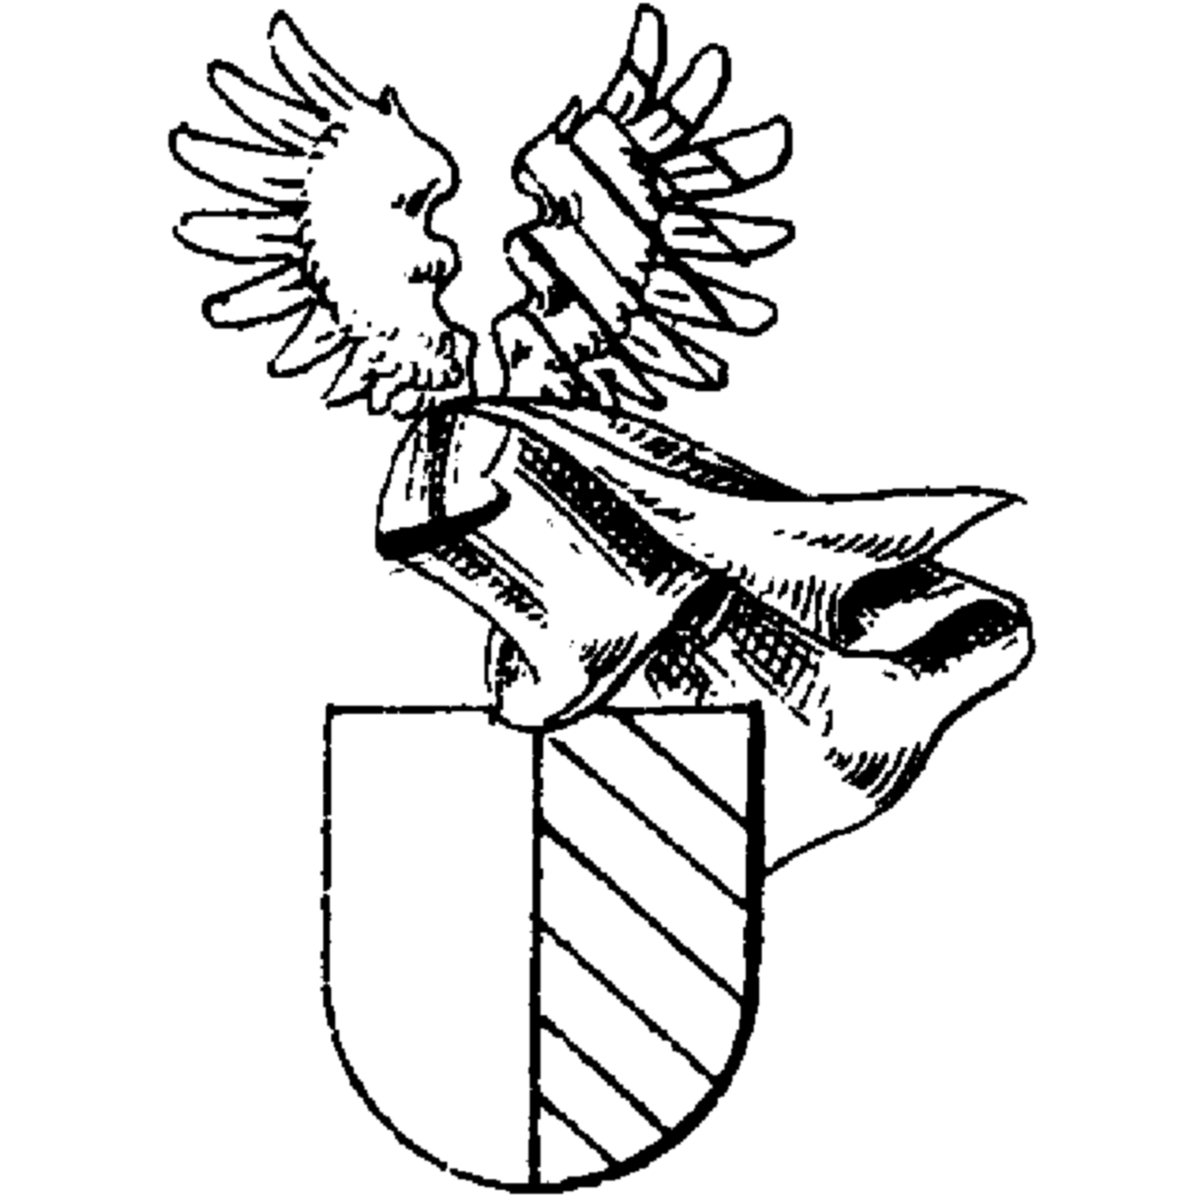 Wappen der Familie Roland